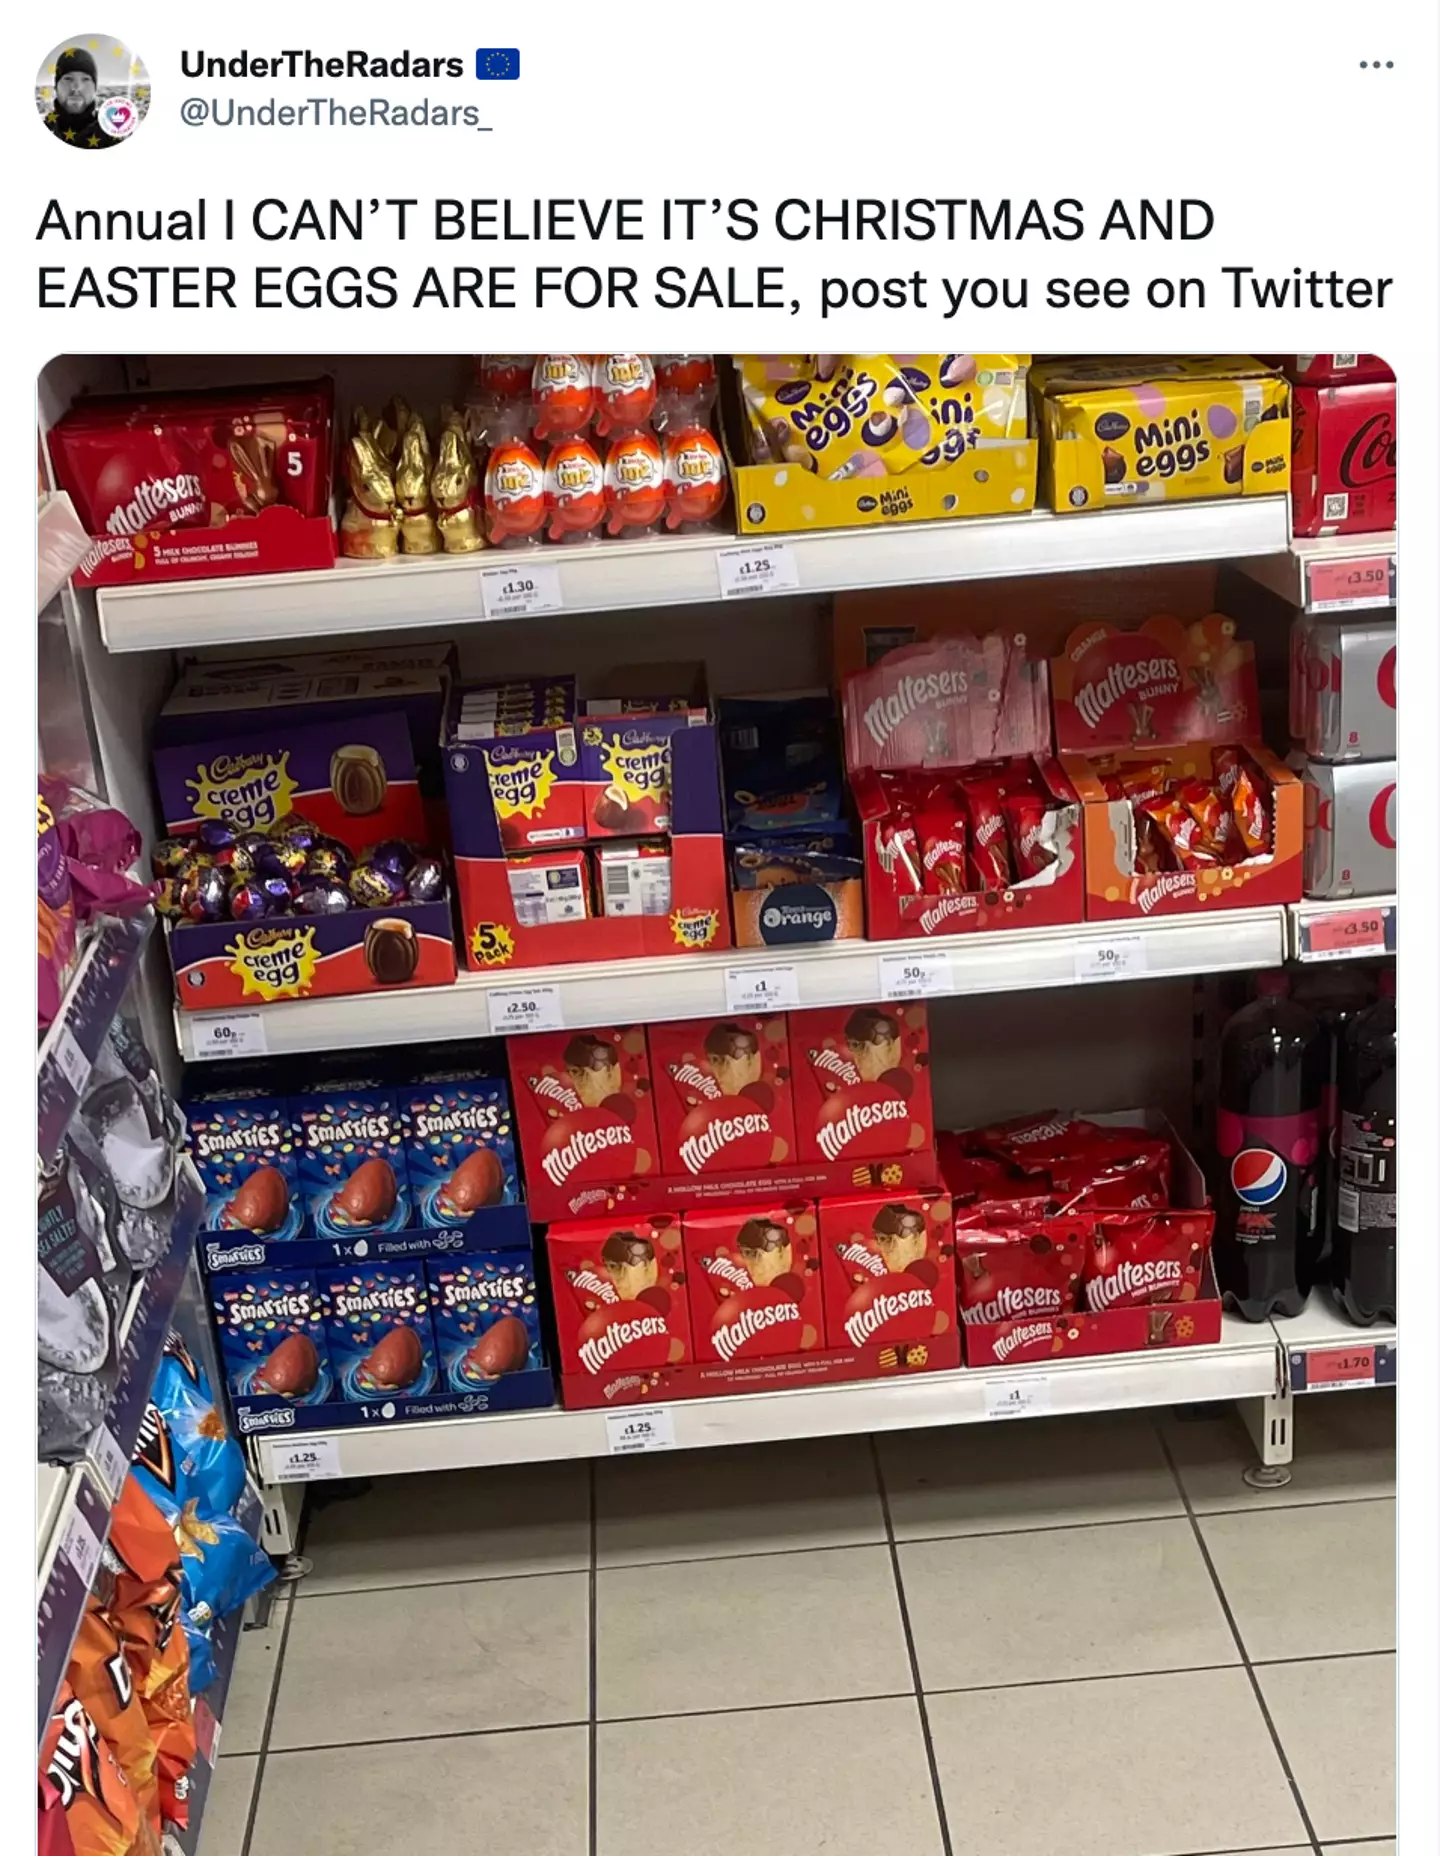 One shopper found Easter eggs on the shelves.